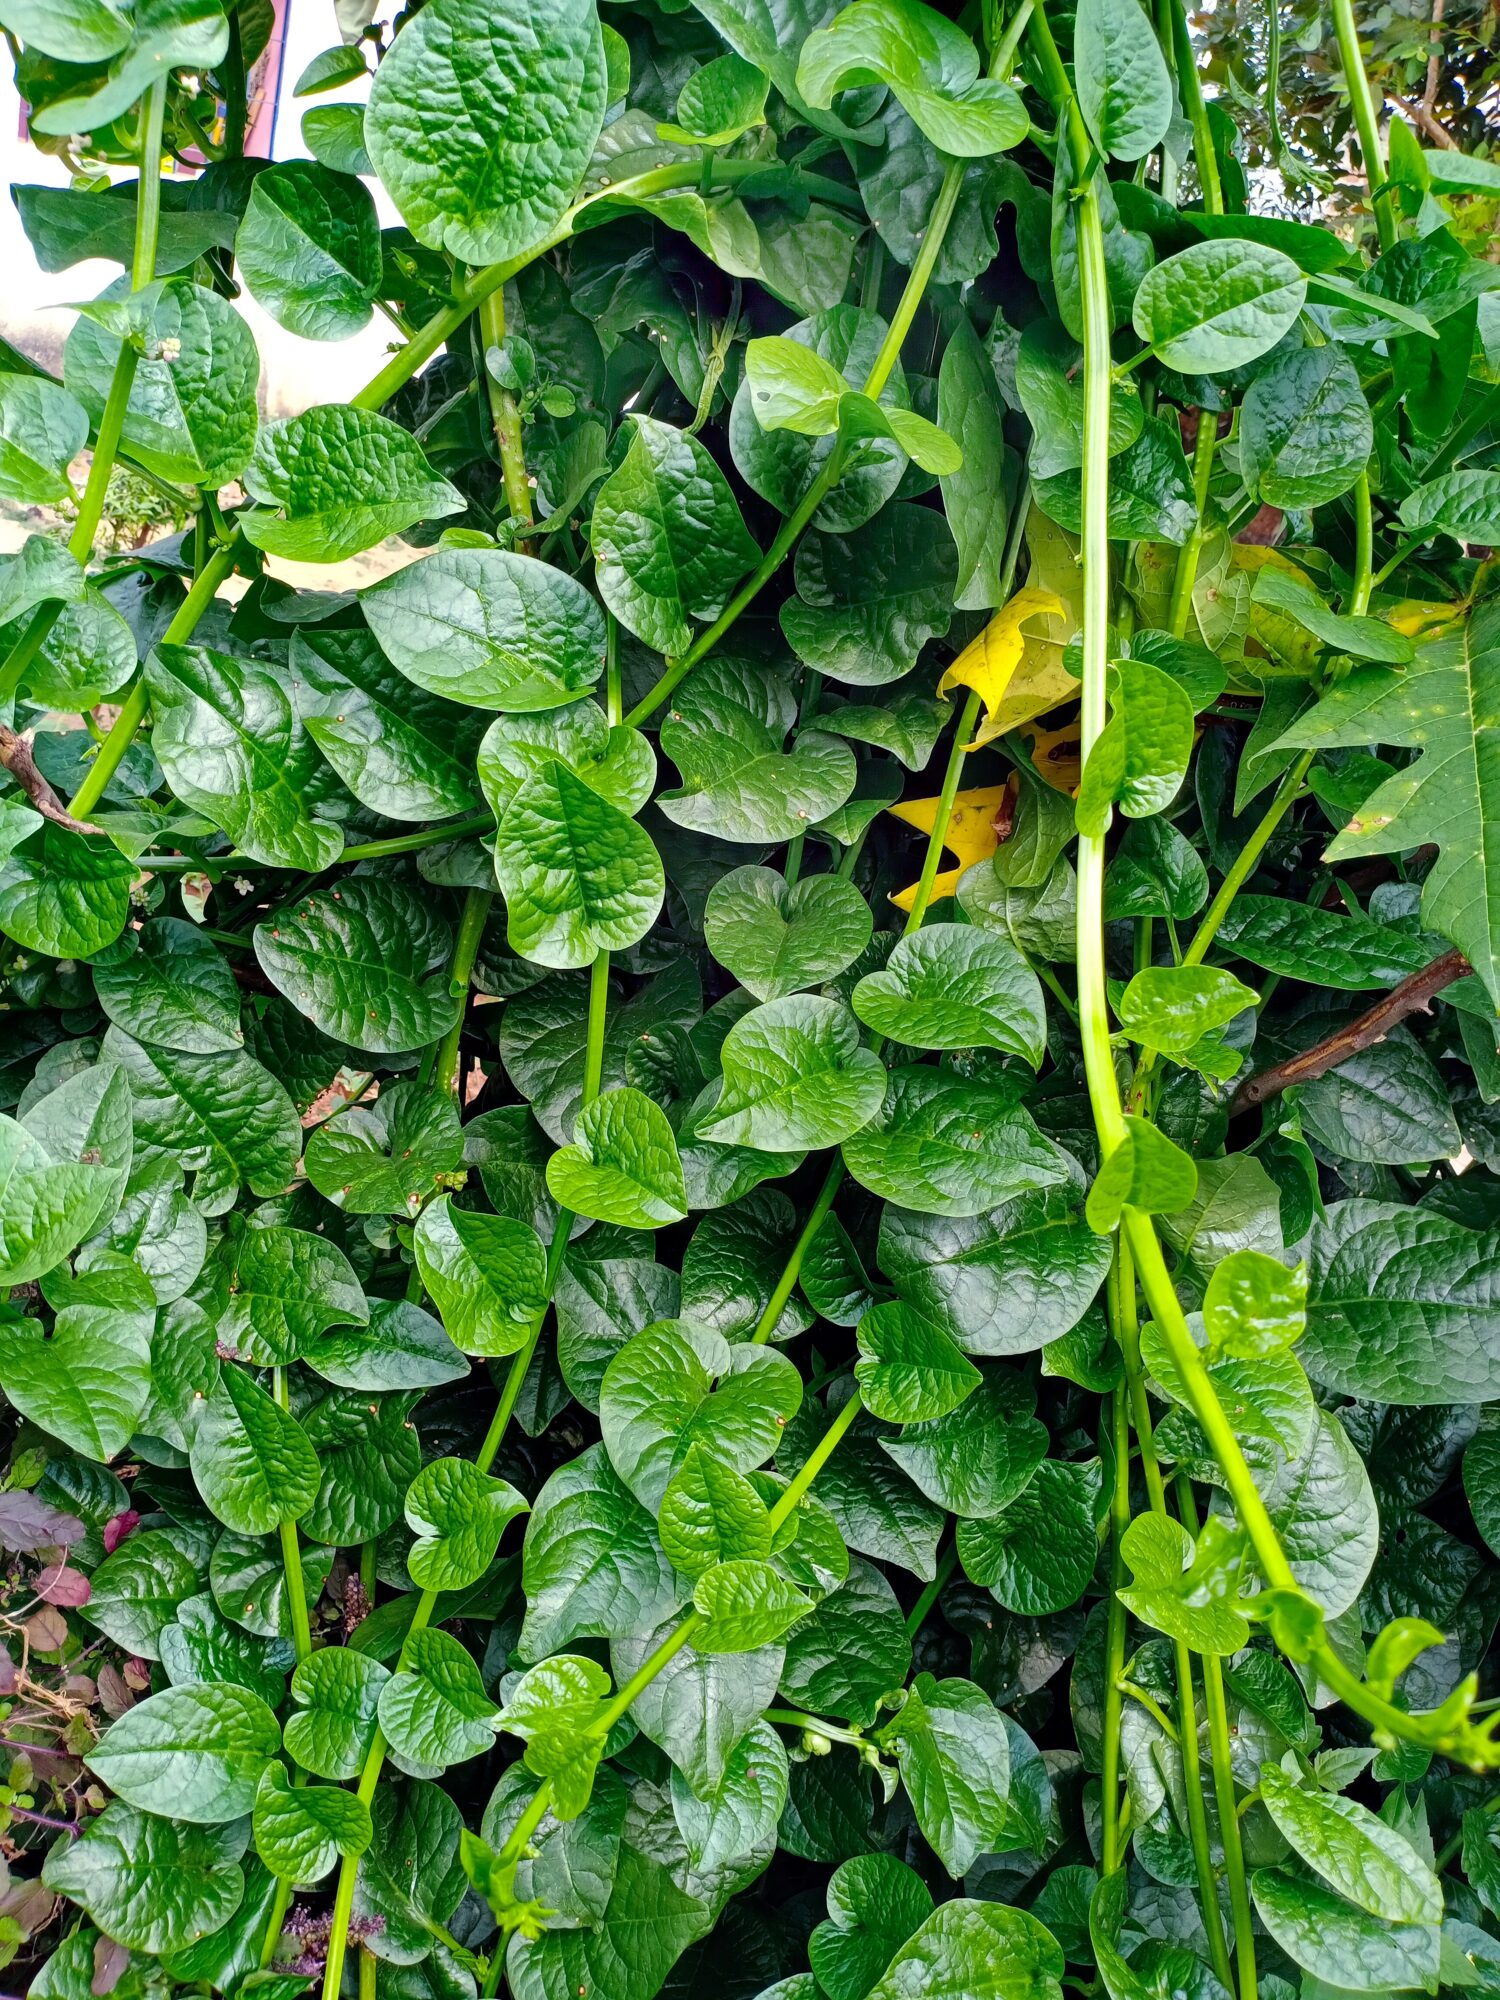 Vite di spinaci Malbar.  è ampiamente usato come ortaggio a foglia.  È anche conosciuto come spinaci Malbar e Poi saag o Pui Shak in India.